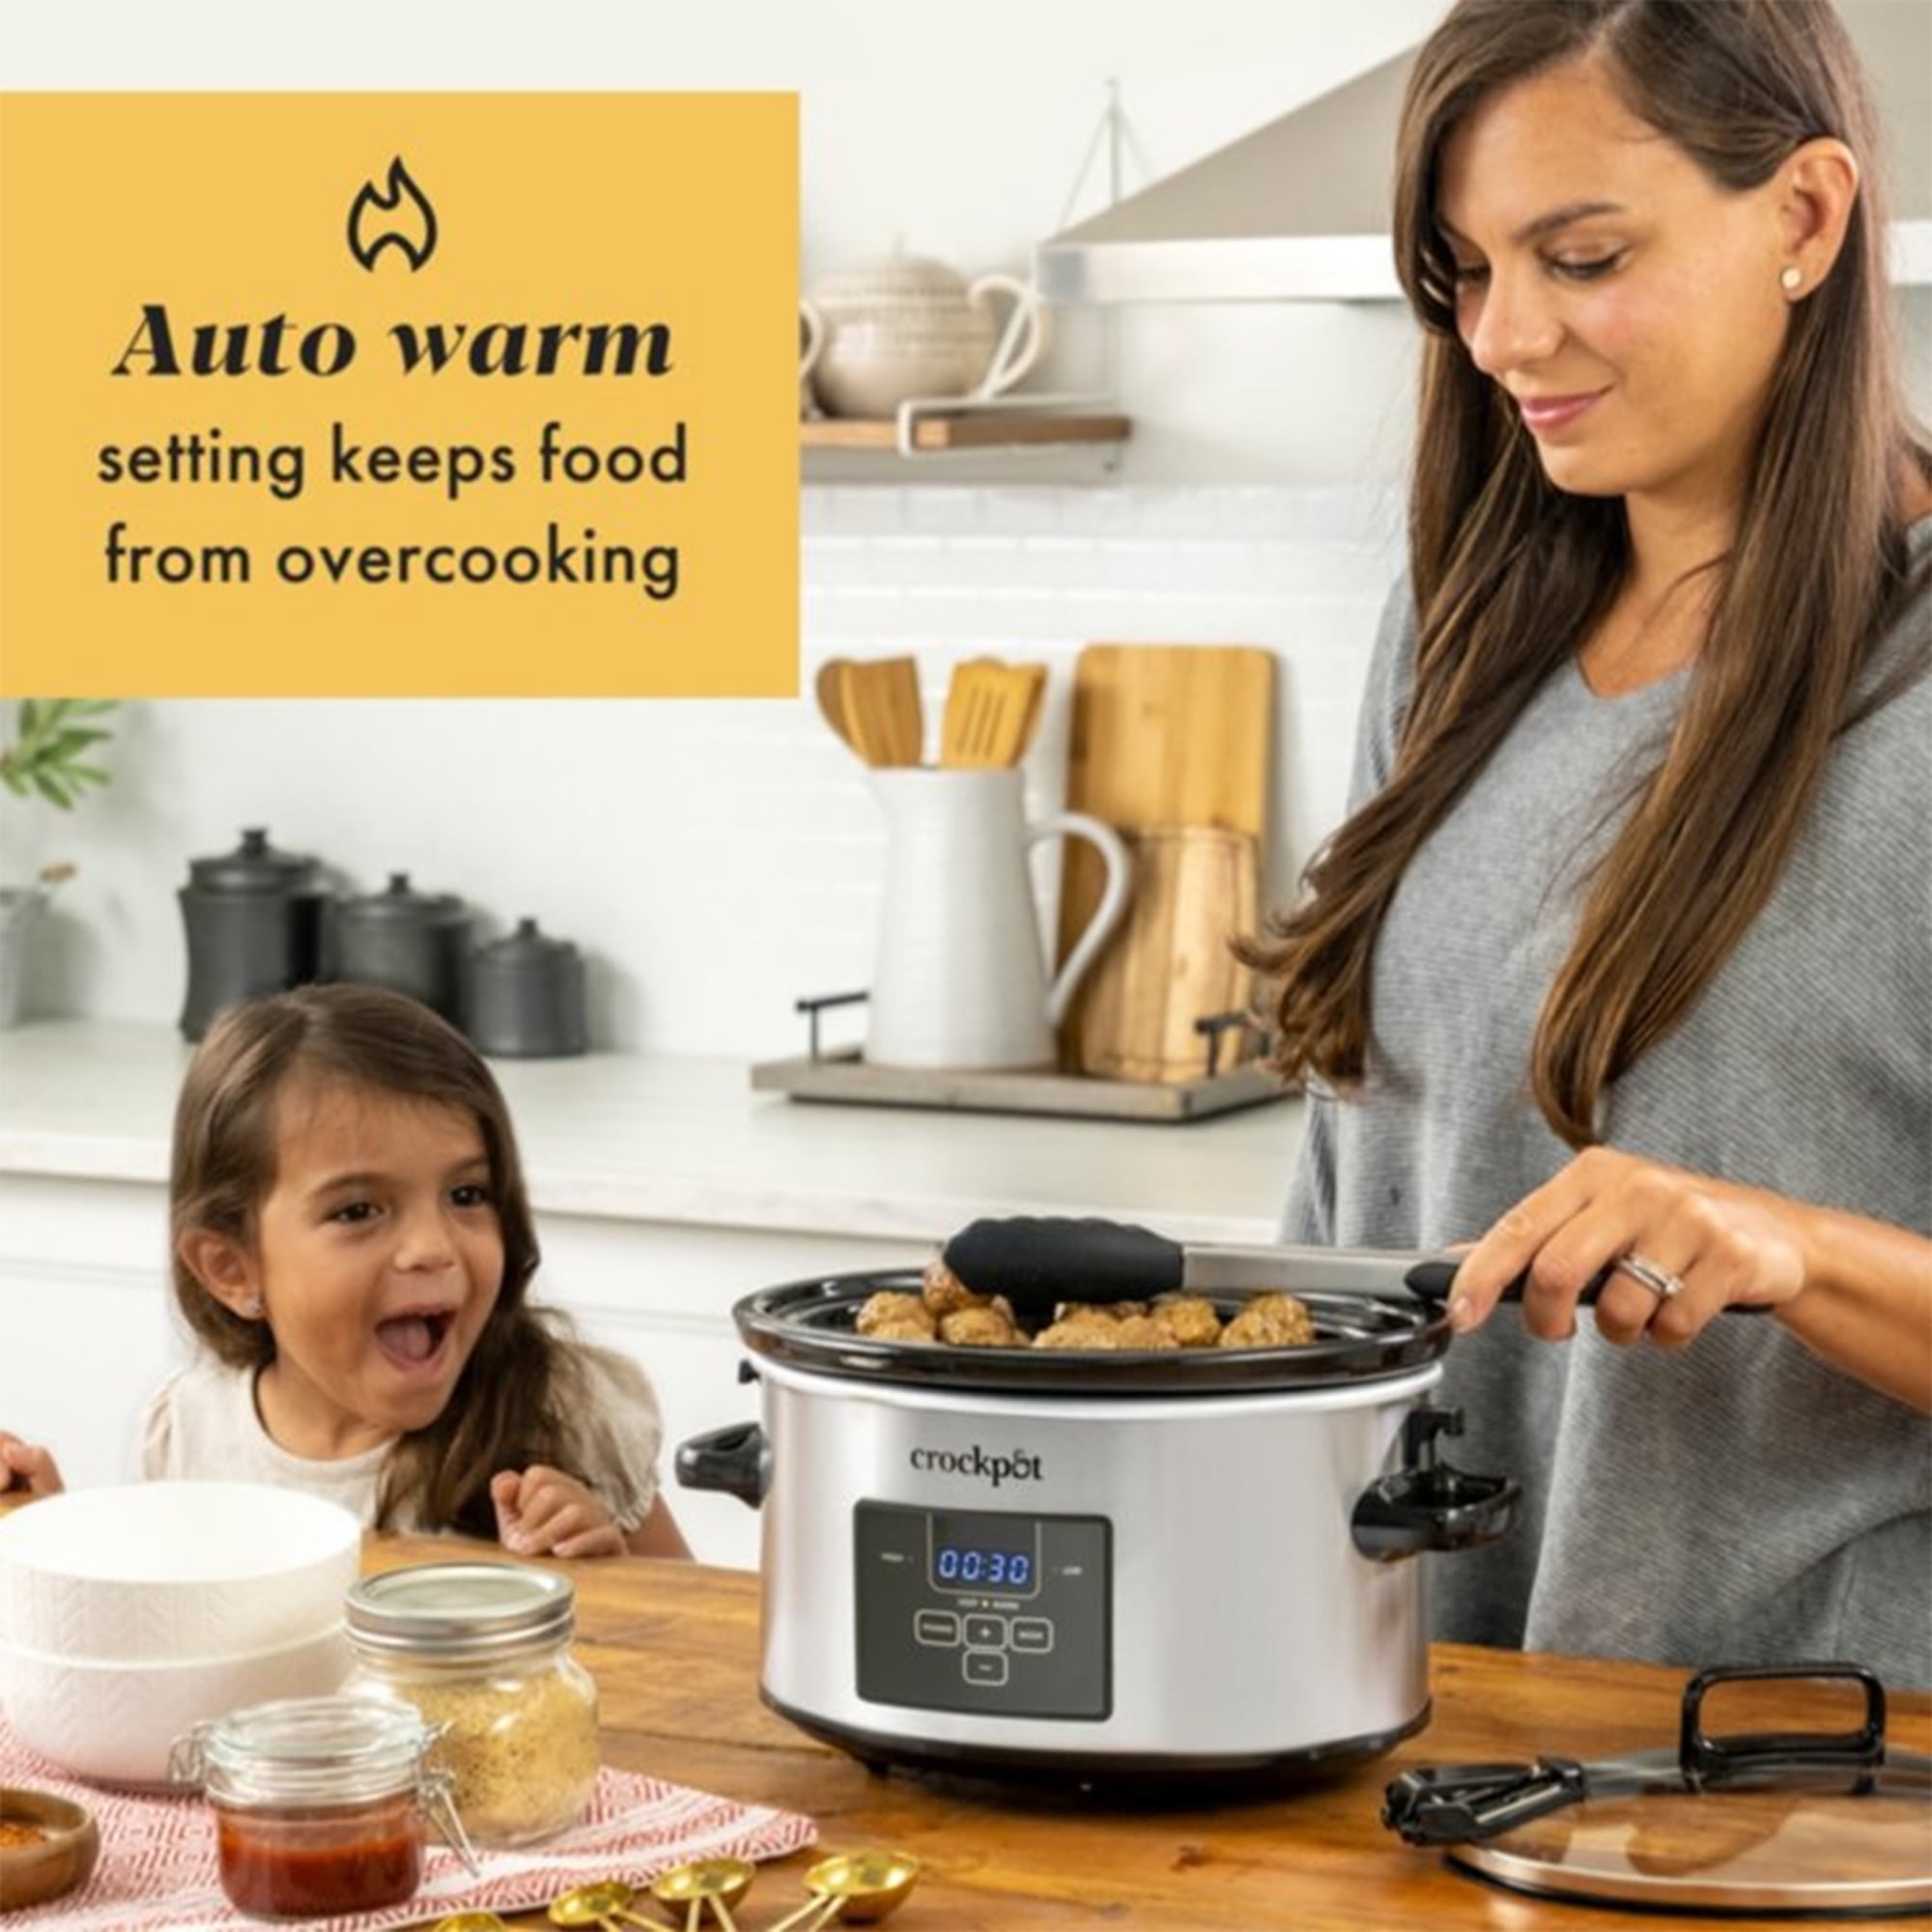 Crock-Pot Smart-Pot 4 Qt. Stainless Steel Slow Cooker - Gillman Home Center